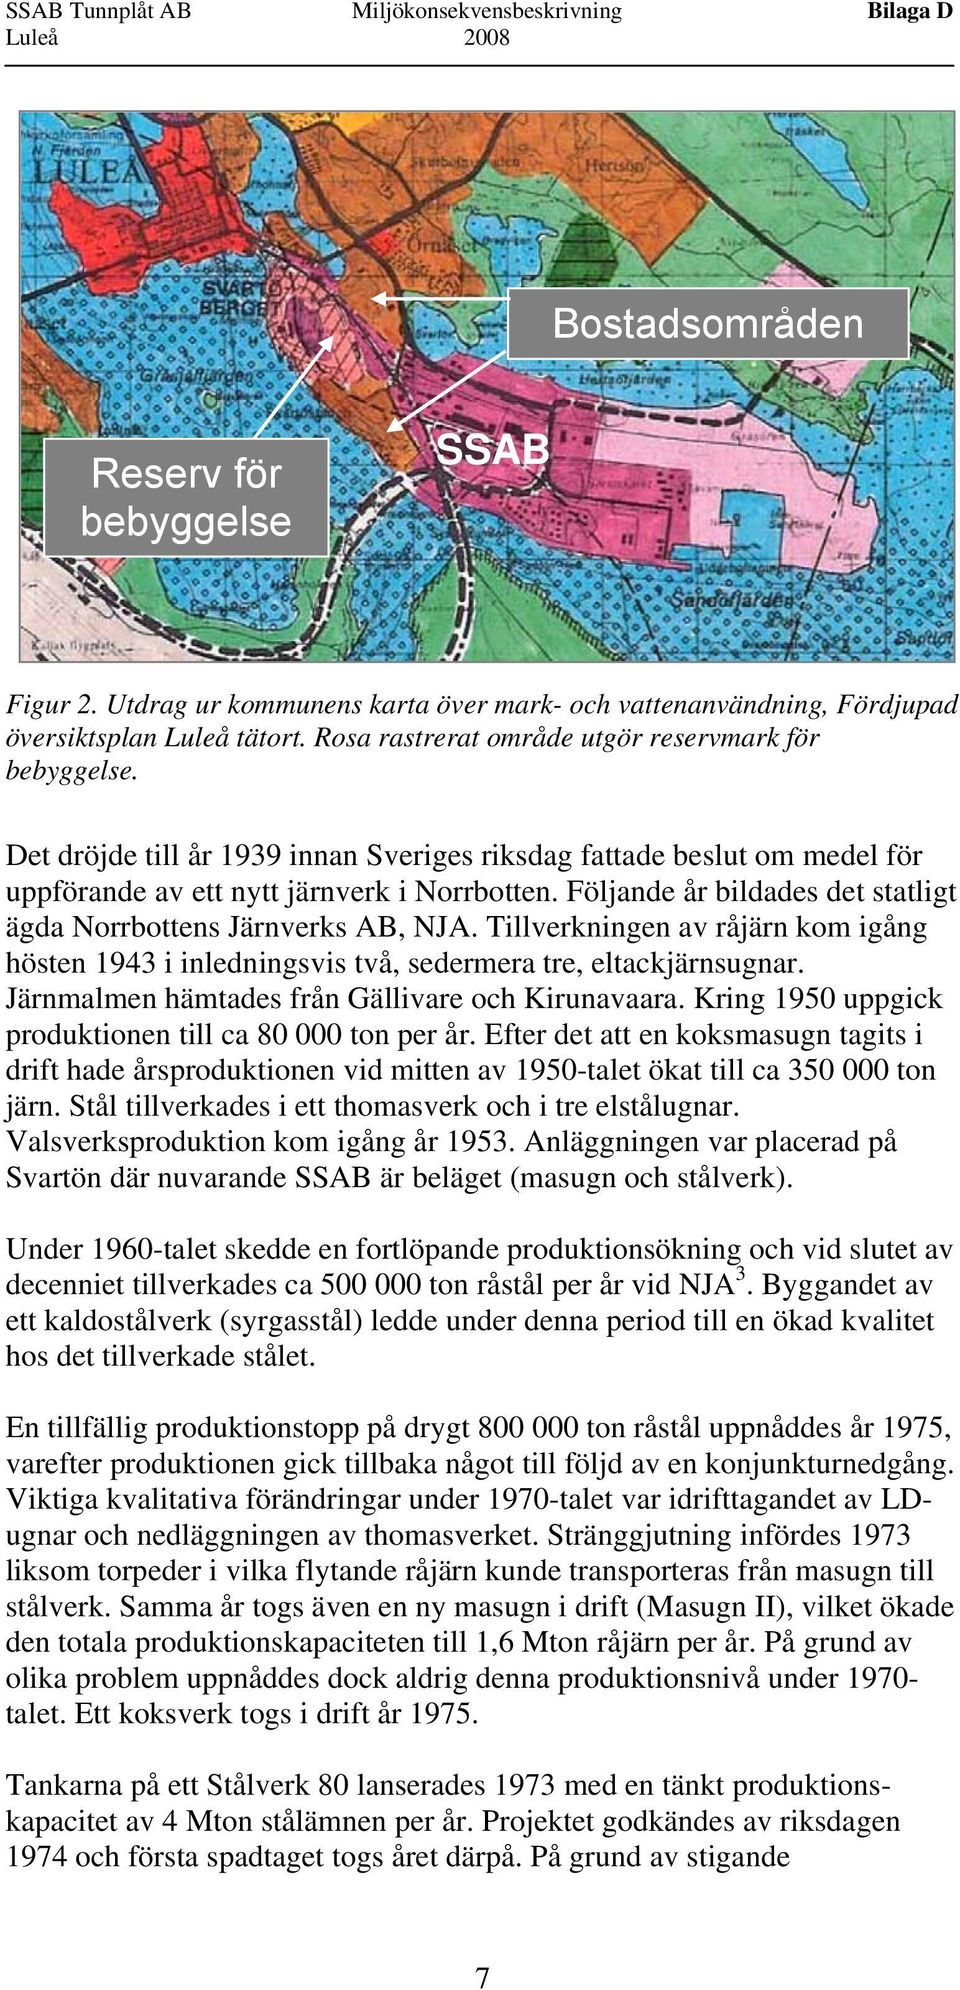 Det dröjde till år 1939 innan Sveriges riksdag fattade beslut om medel för uppförande av ett nytt järnverk i Norrbotten. Följande år bildades det statligt ägda Norrbottens Järnverks AB, NJA.